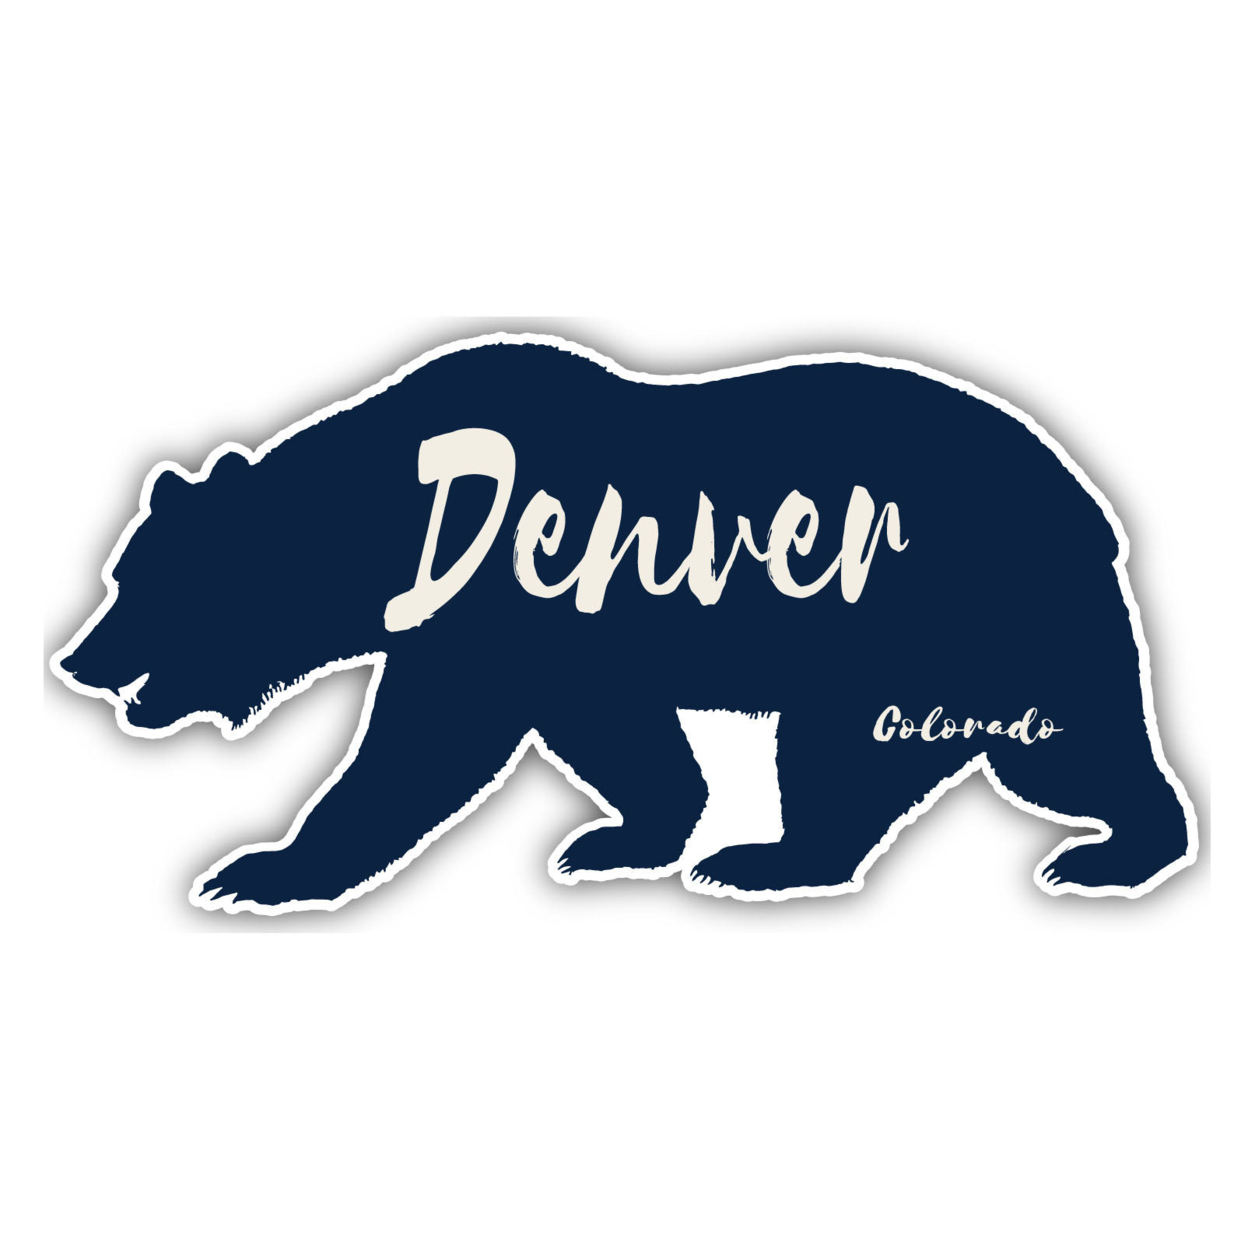 Denver Colorado Souvenir Decorative Stickers (Choose Theme And Size) - Single Unit, 6-Inch, Tent